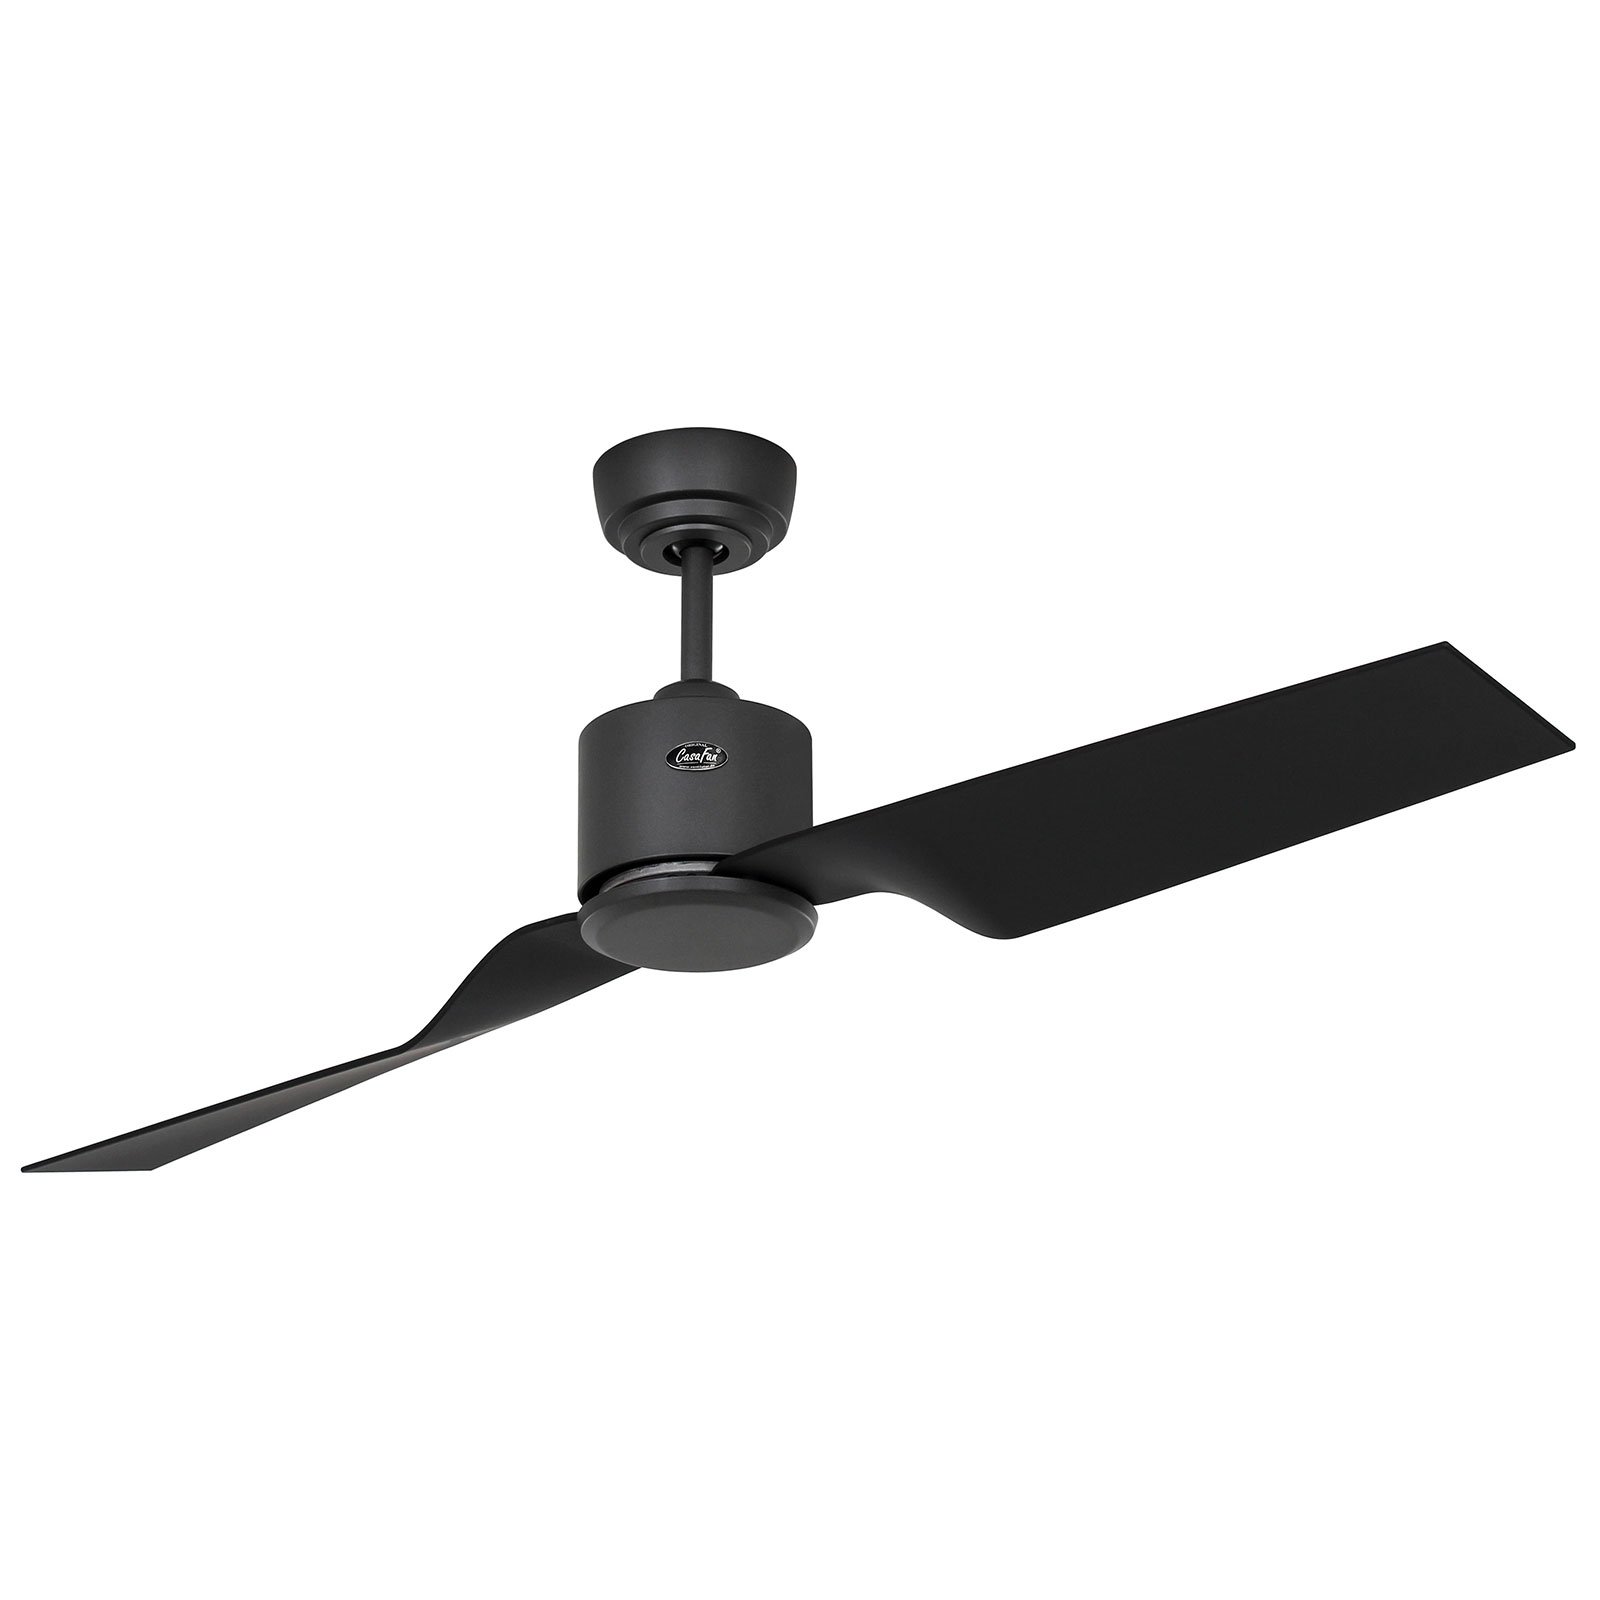 Eco Dynamix II ceiling fan, basalt grey